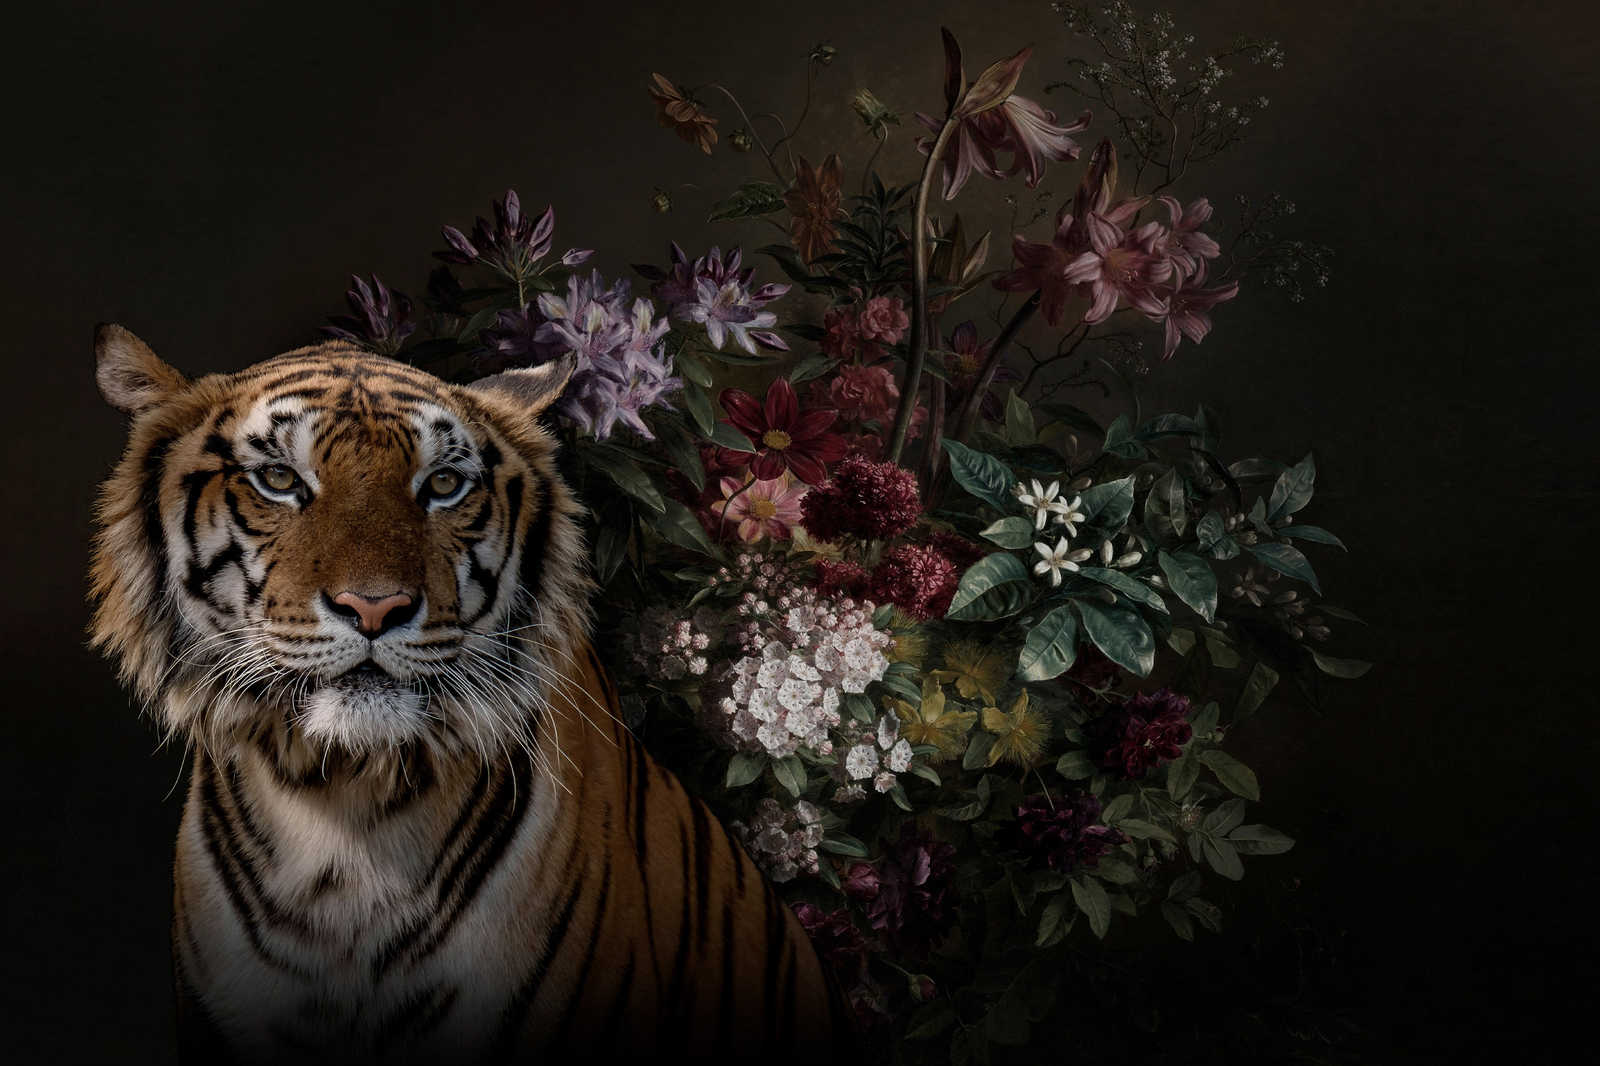             Cuadro en lienzo Retrato de tigre con flores - 0,90 m x 0,60 m
        